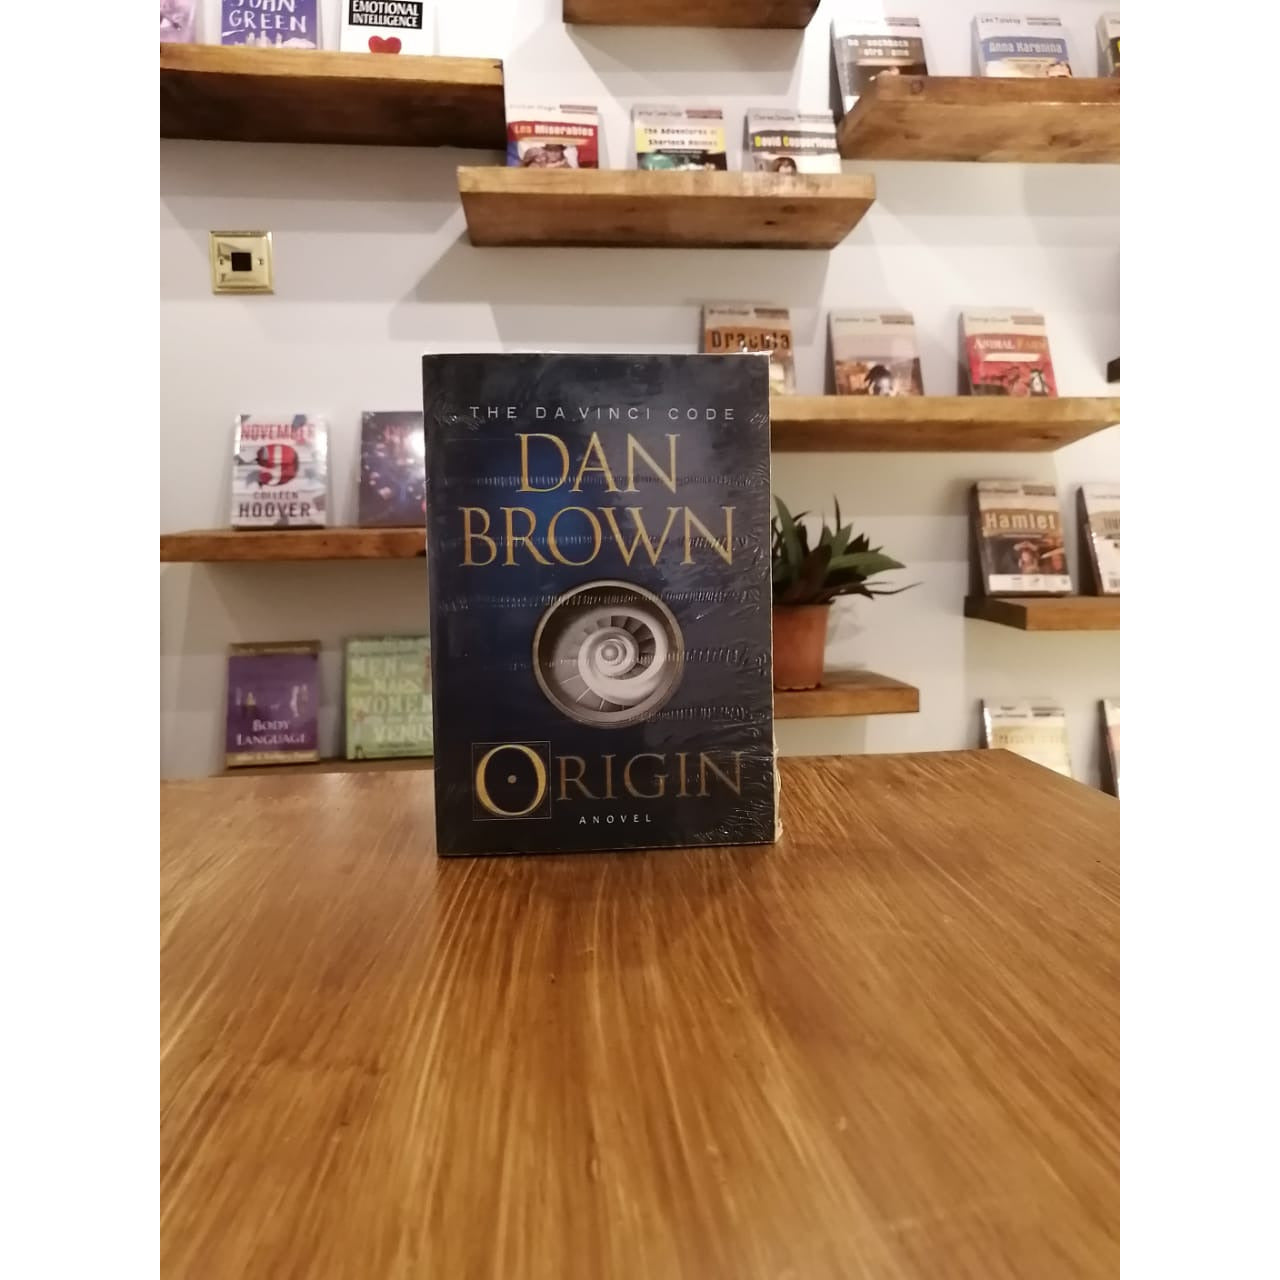 Origin By Dan Brown Book